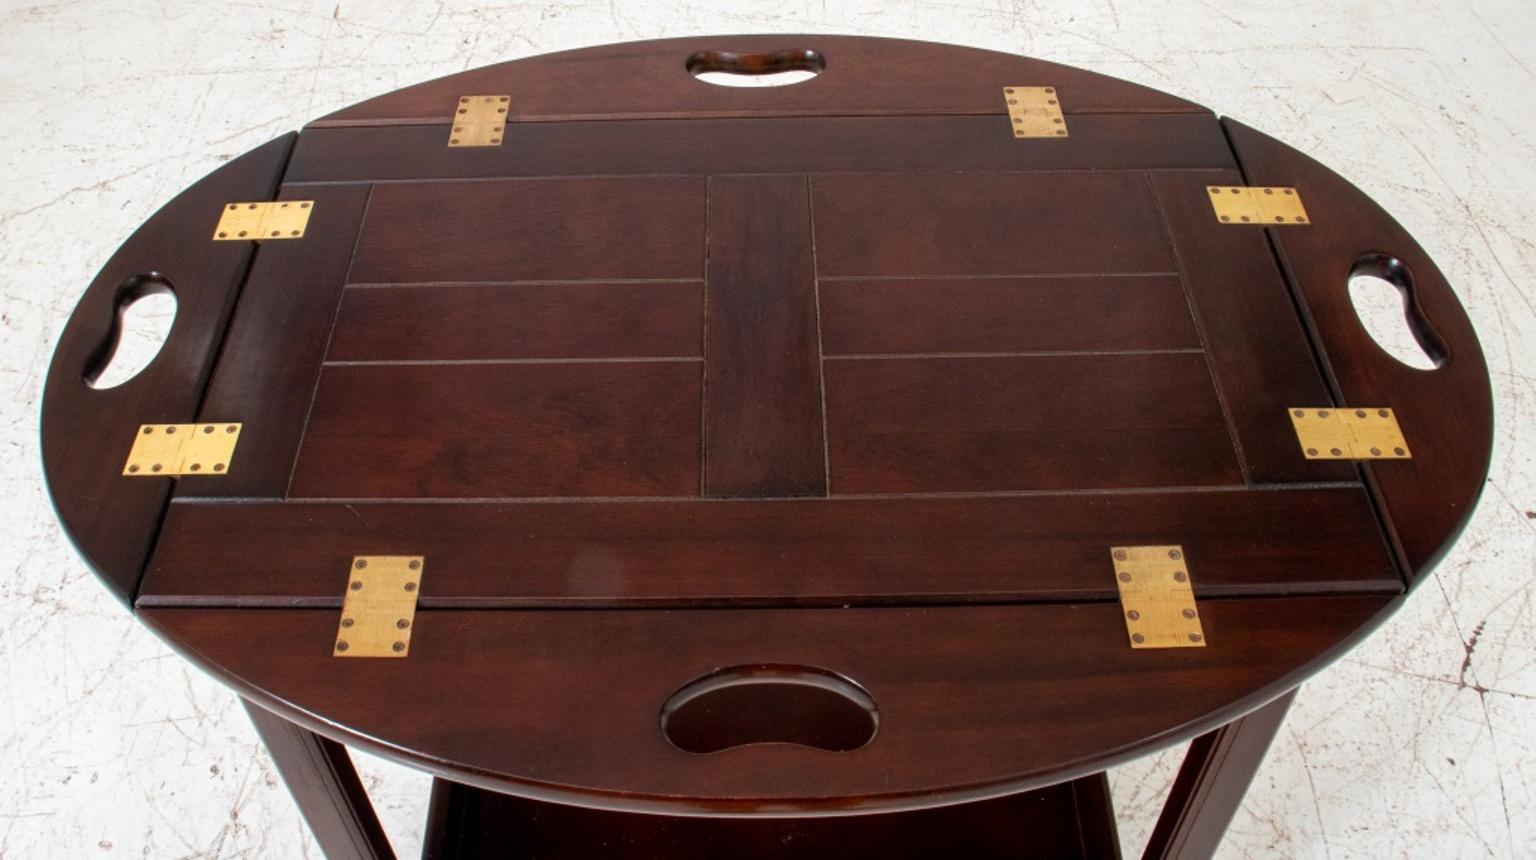 Table de maître / table d'appoint / table basse moderne, plateau ovale à carré avec quatre feuilles pliantes montées avec des charnières en laiton, une étagère inférieure.
Distributeur : S138XX.